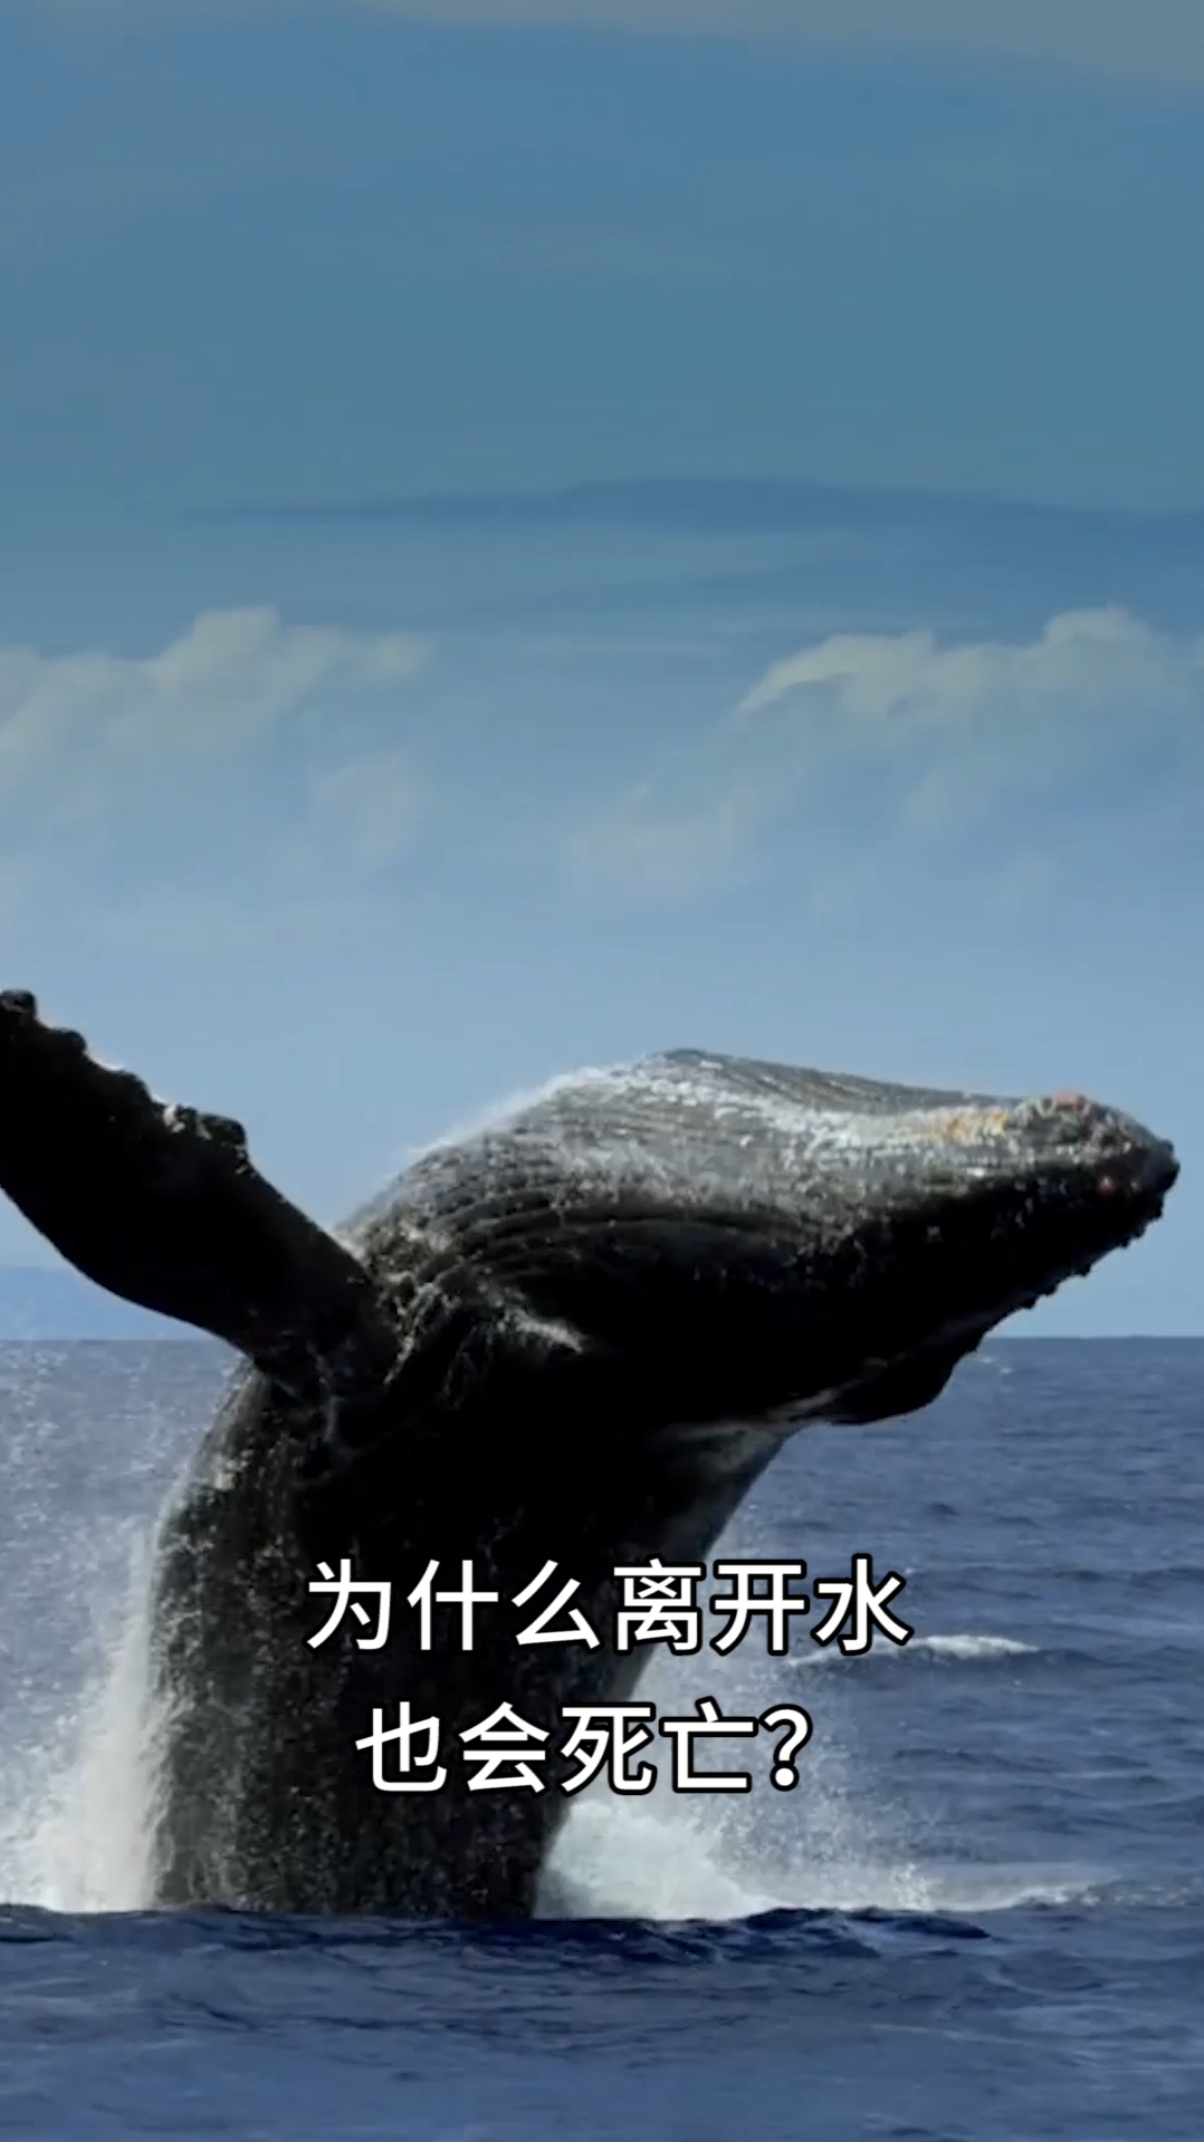 蓝鲸用肺呼吸,为什么离开水也会死亡?